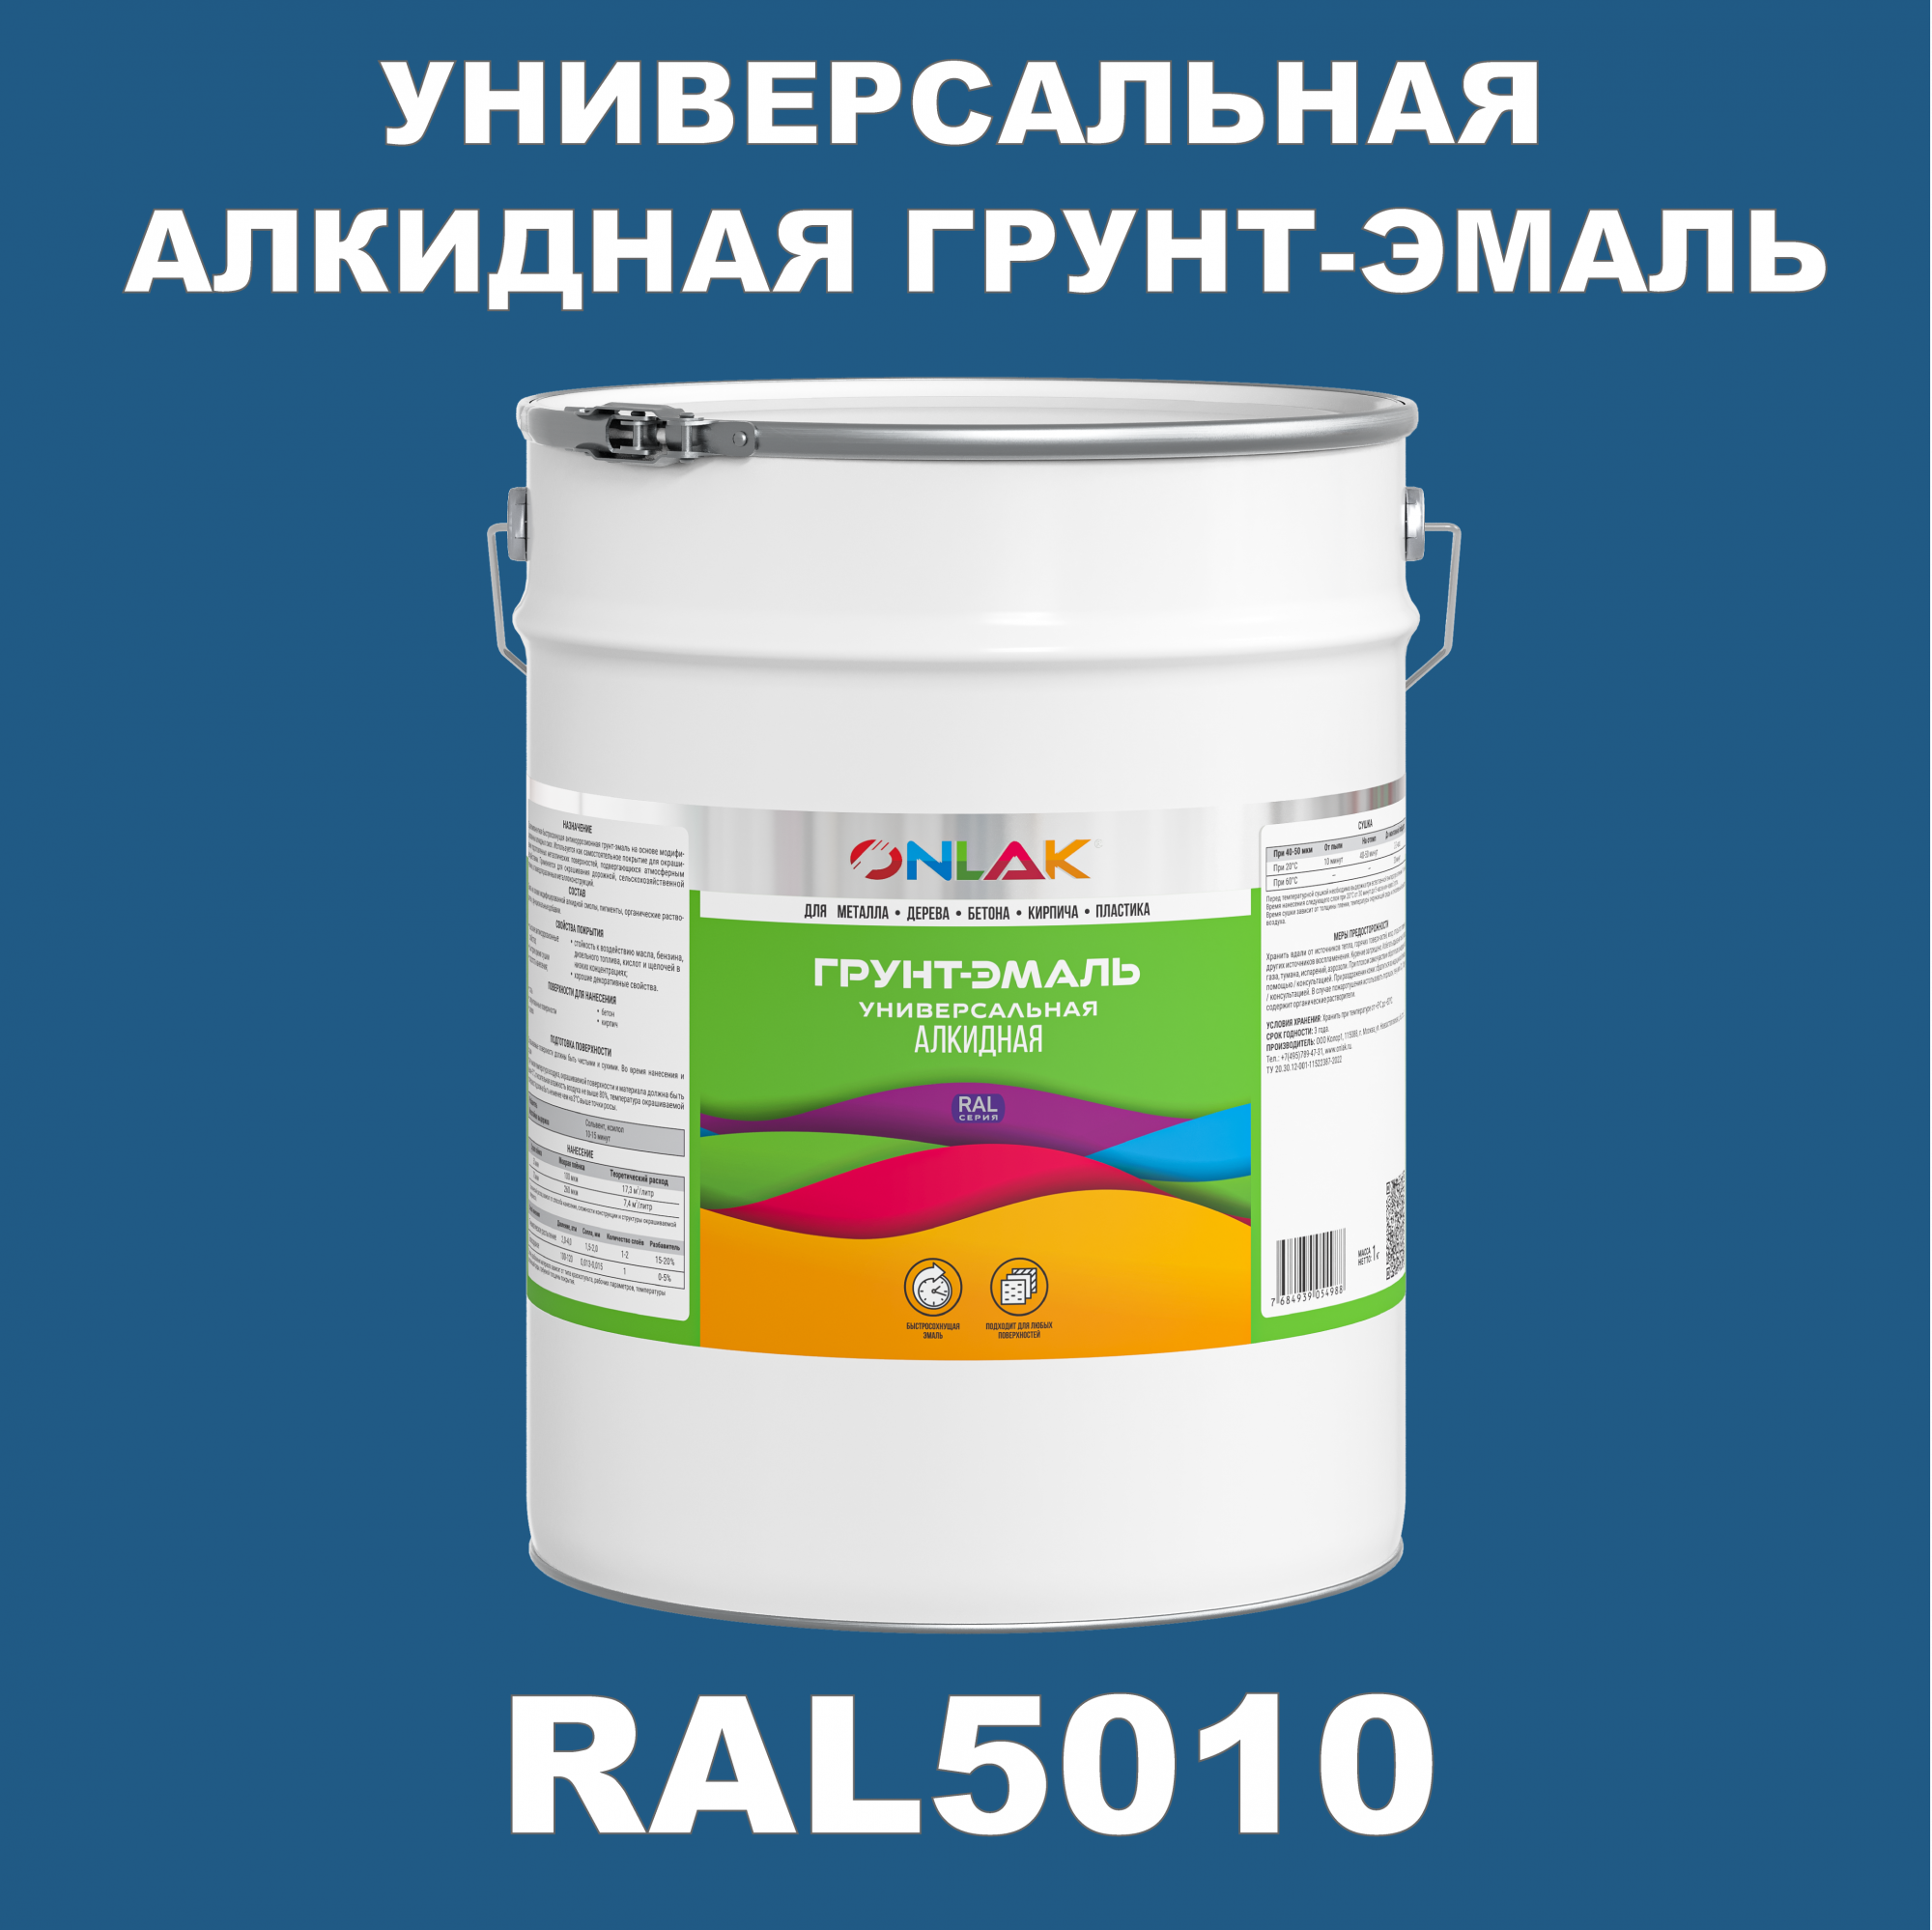 Грунт-эмаль ONLAK 1К RAL5010 антикоррозионная алкидная по металлу по ржавчине 20 кг грунт эмаль рас по ржавчине алкидная синяя 0 9 кг